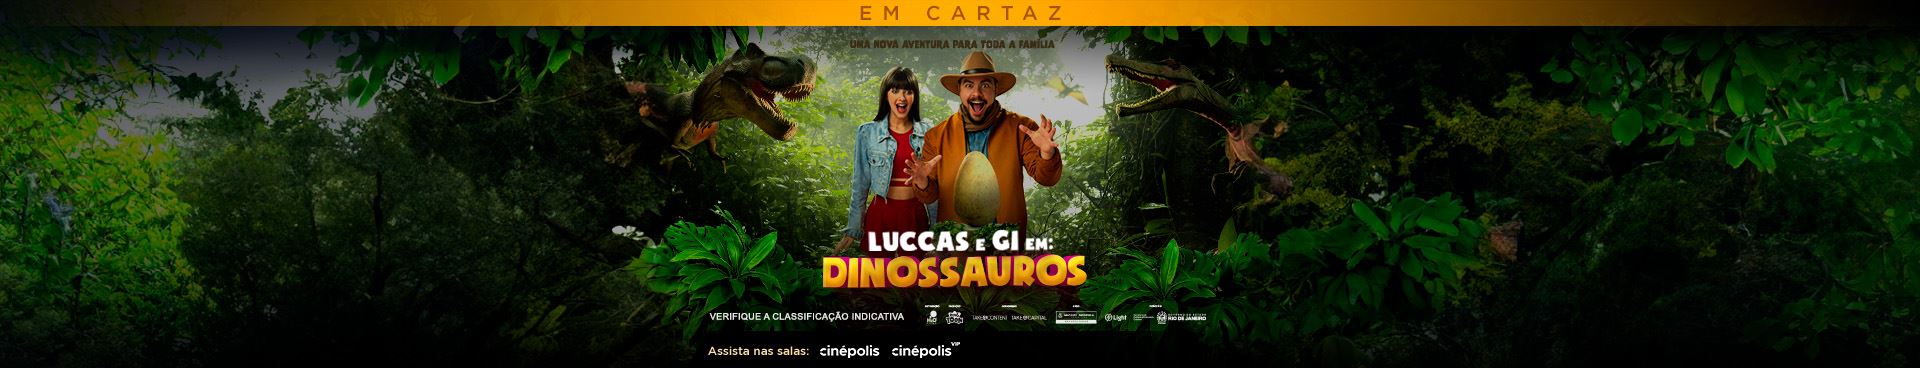 Luccas e Gi Em: Dinossauros